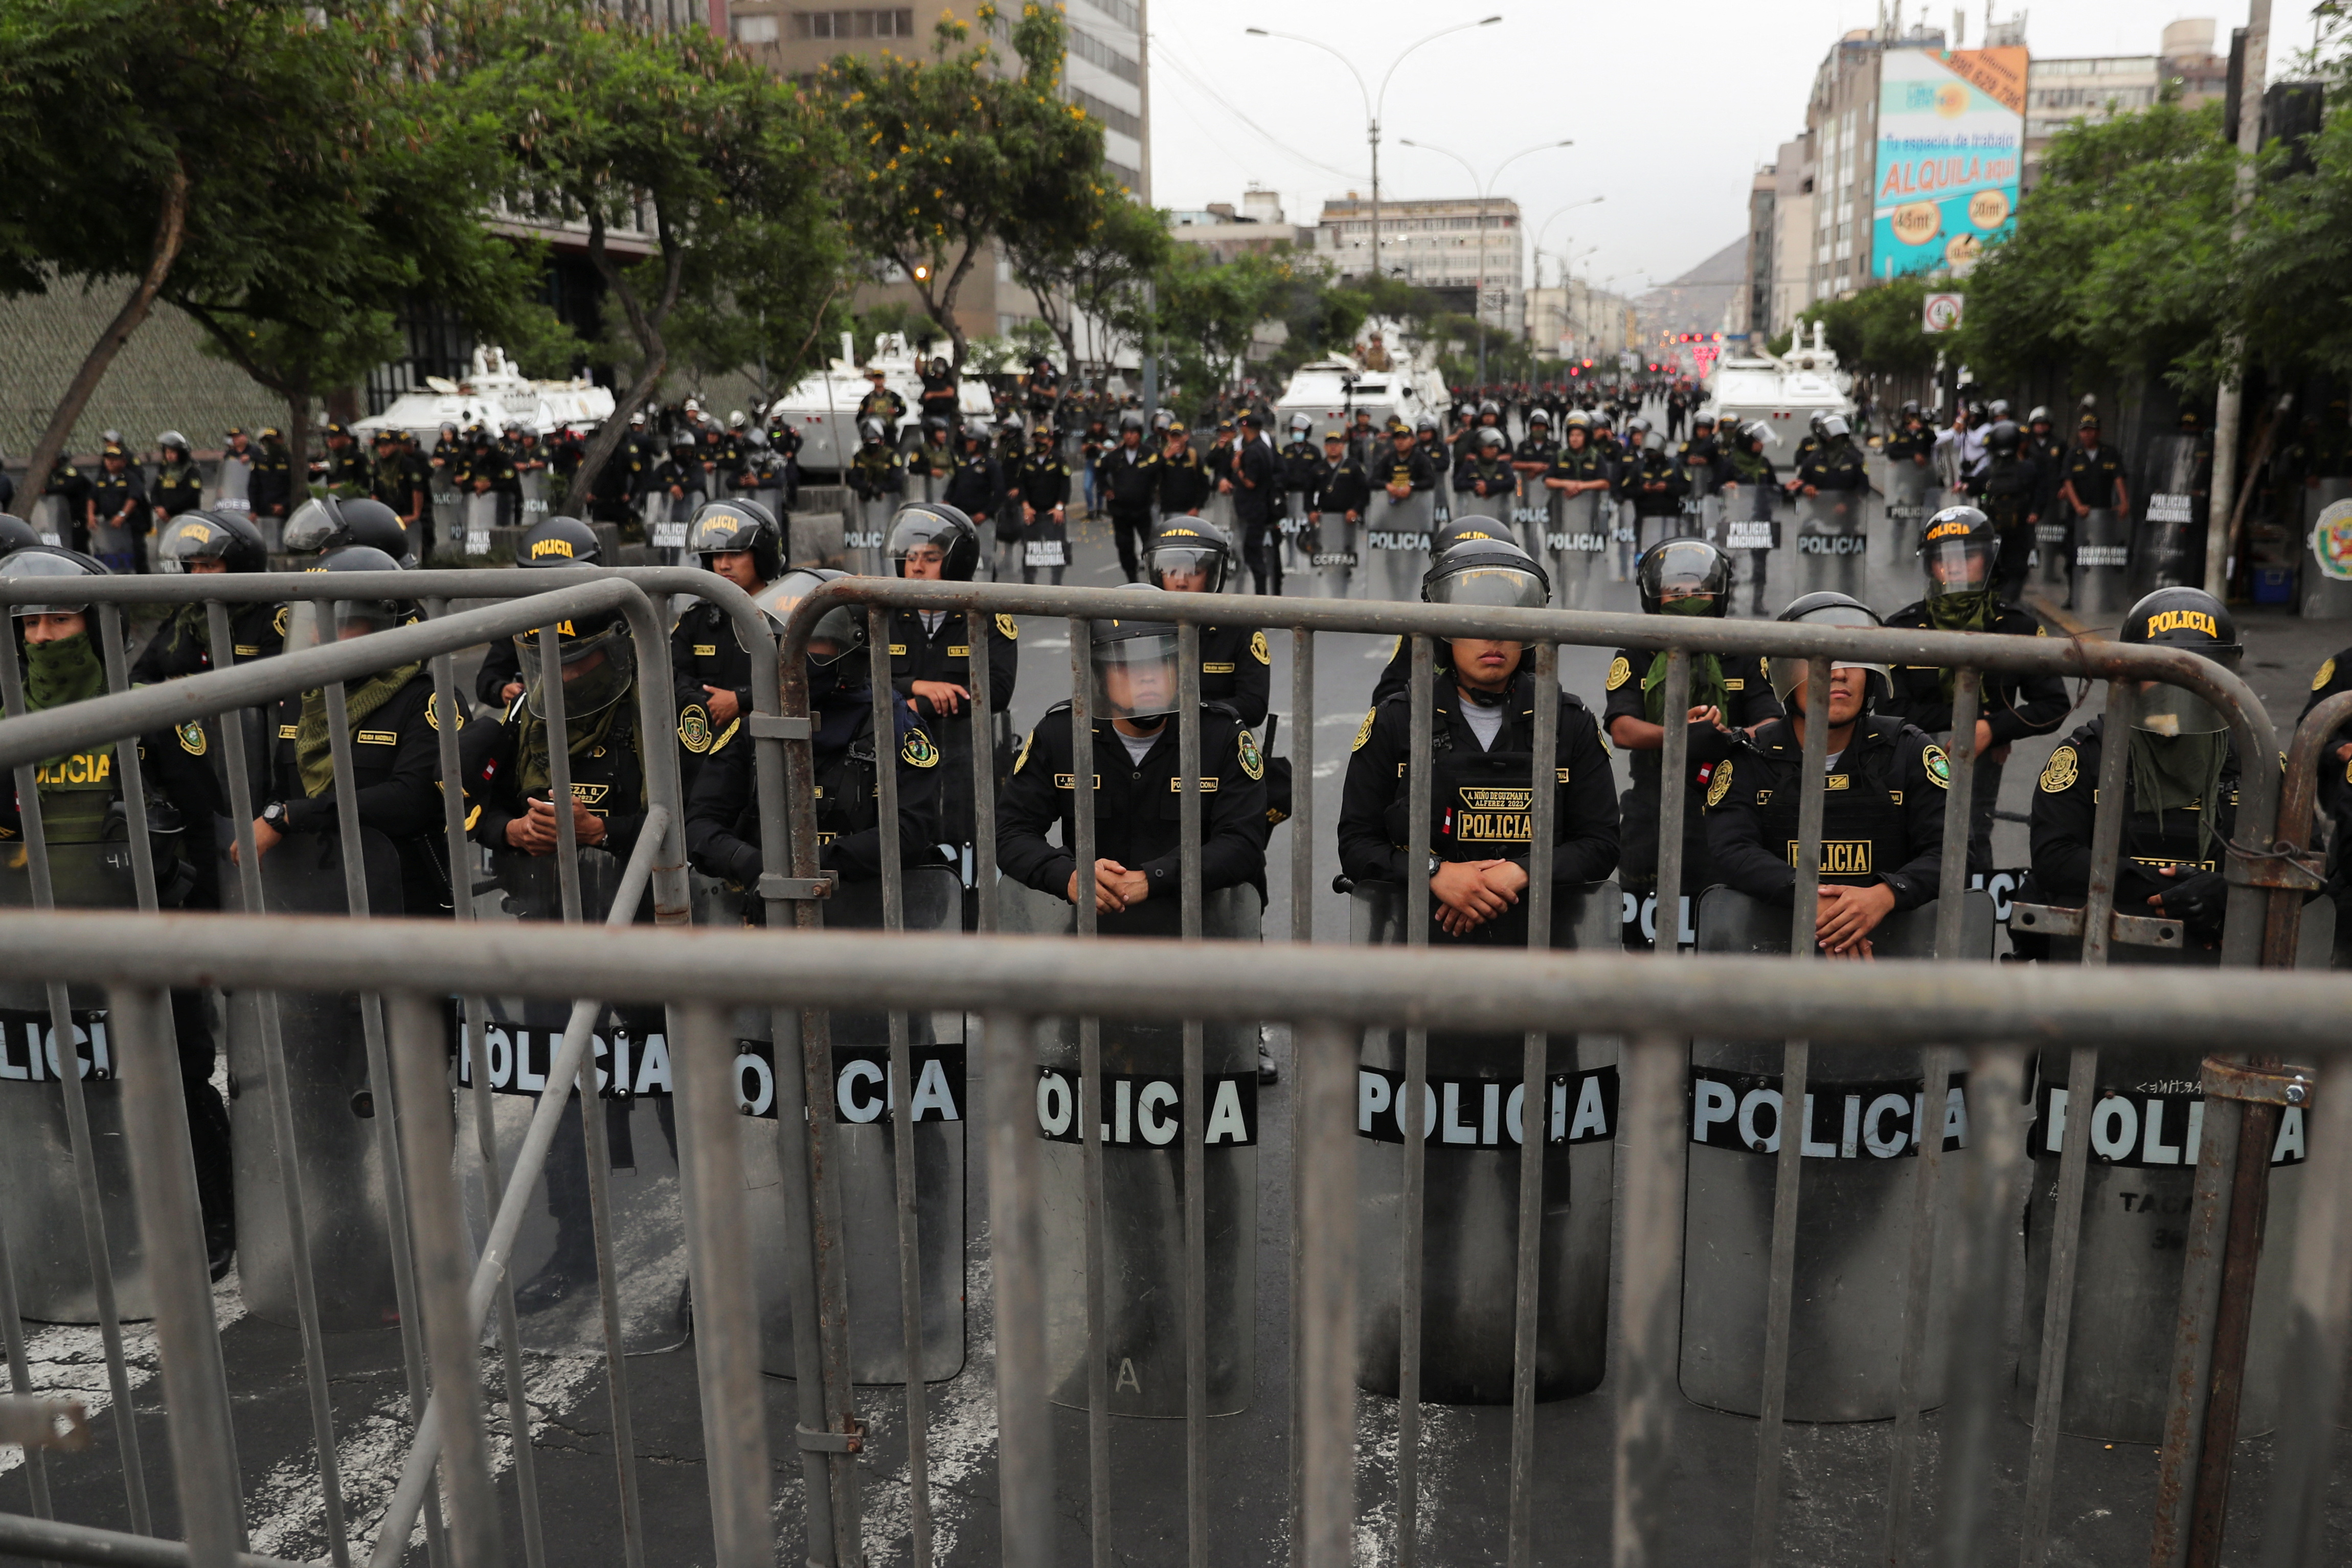 El gobierno decretó el estado de emergencia y toque de queda en varias regiones del país (REUTERS/Sebastian Castaneda)